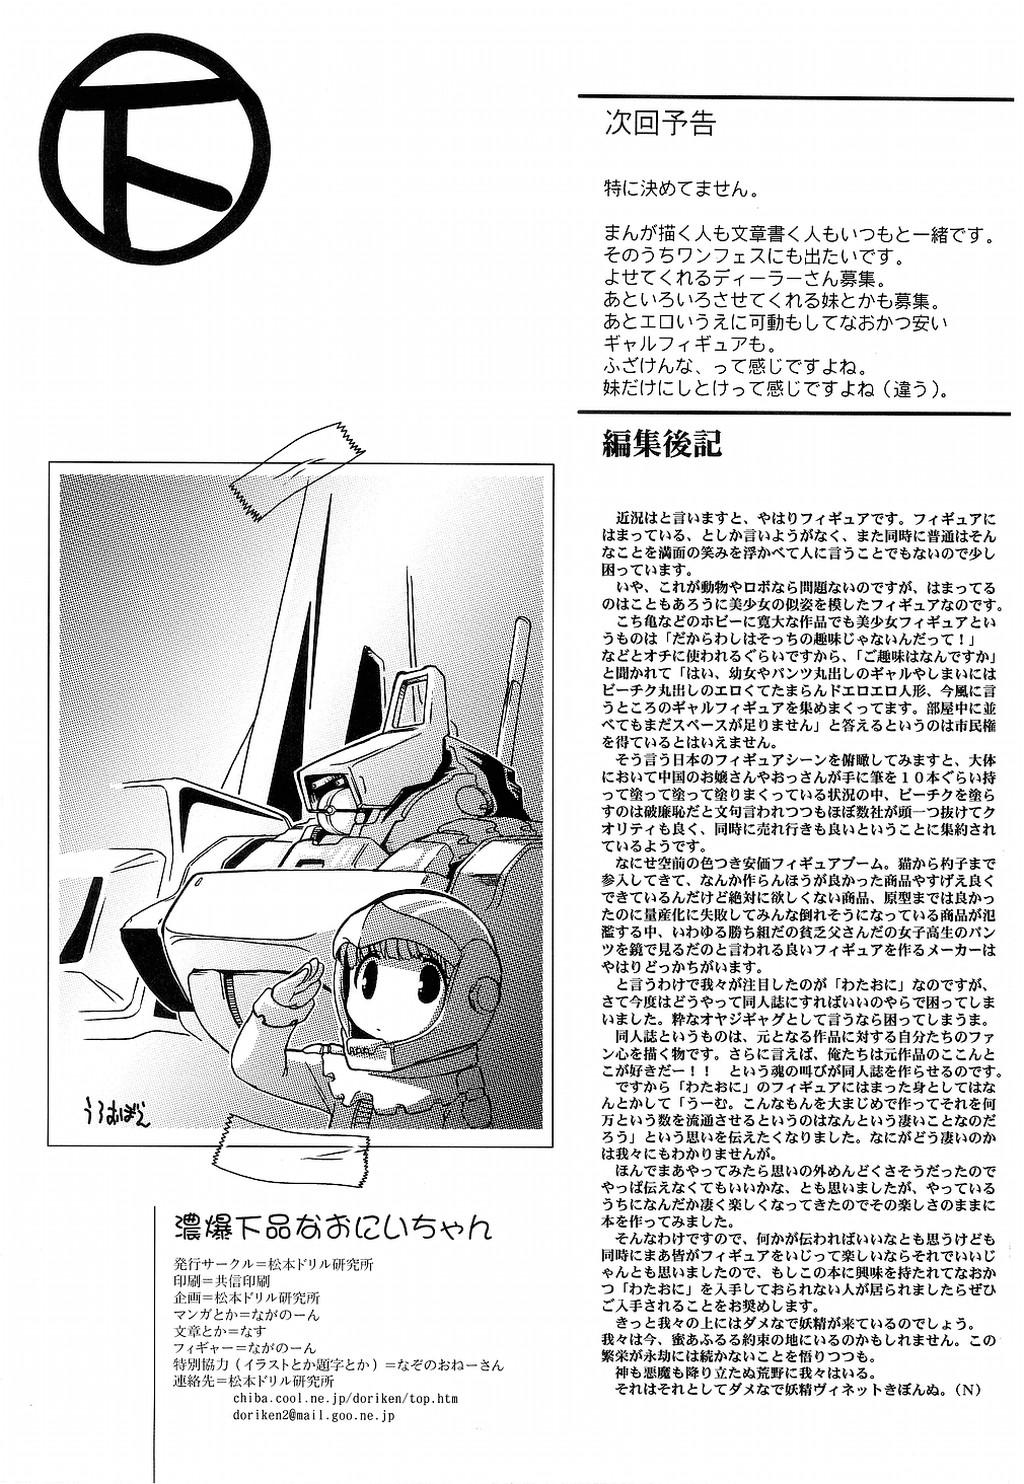 Girlnextdoor Noubaku Gehinna Onii-chan 1 - Shuukan watashi no onii-chan Hood - Page 35